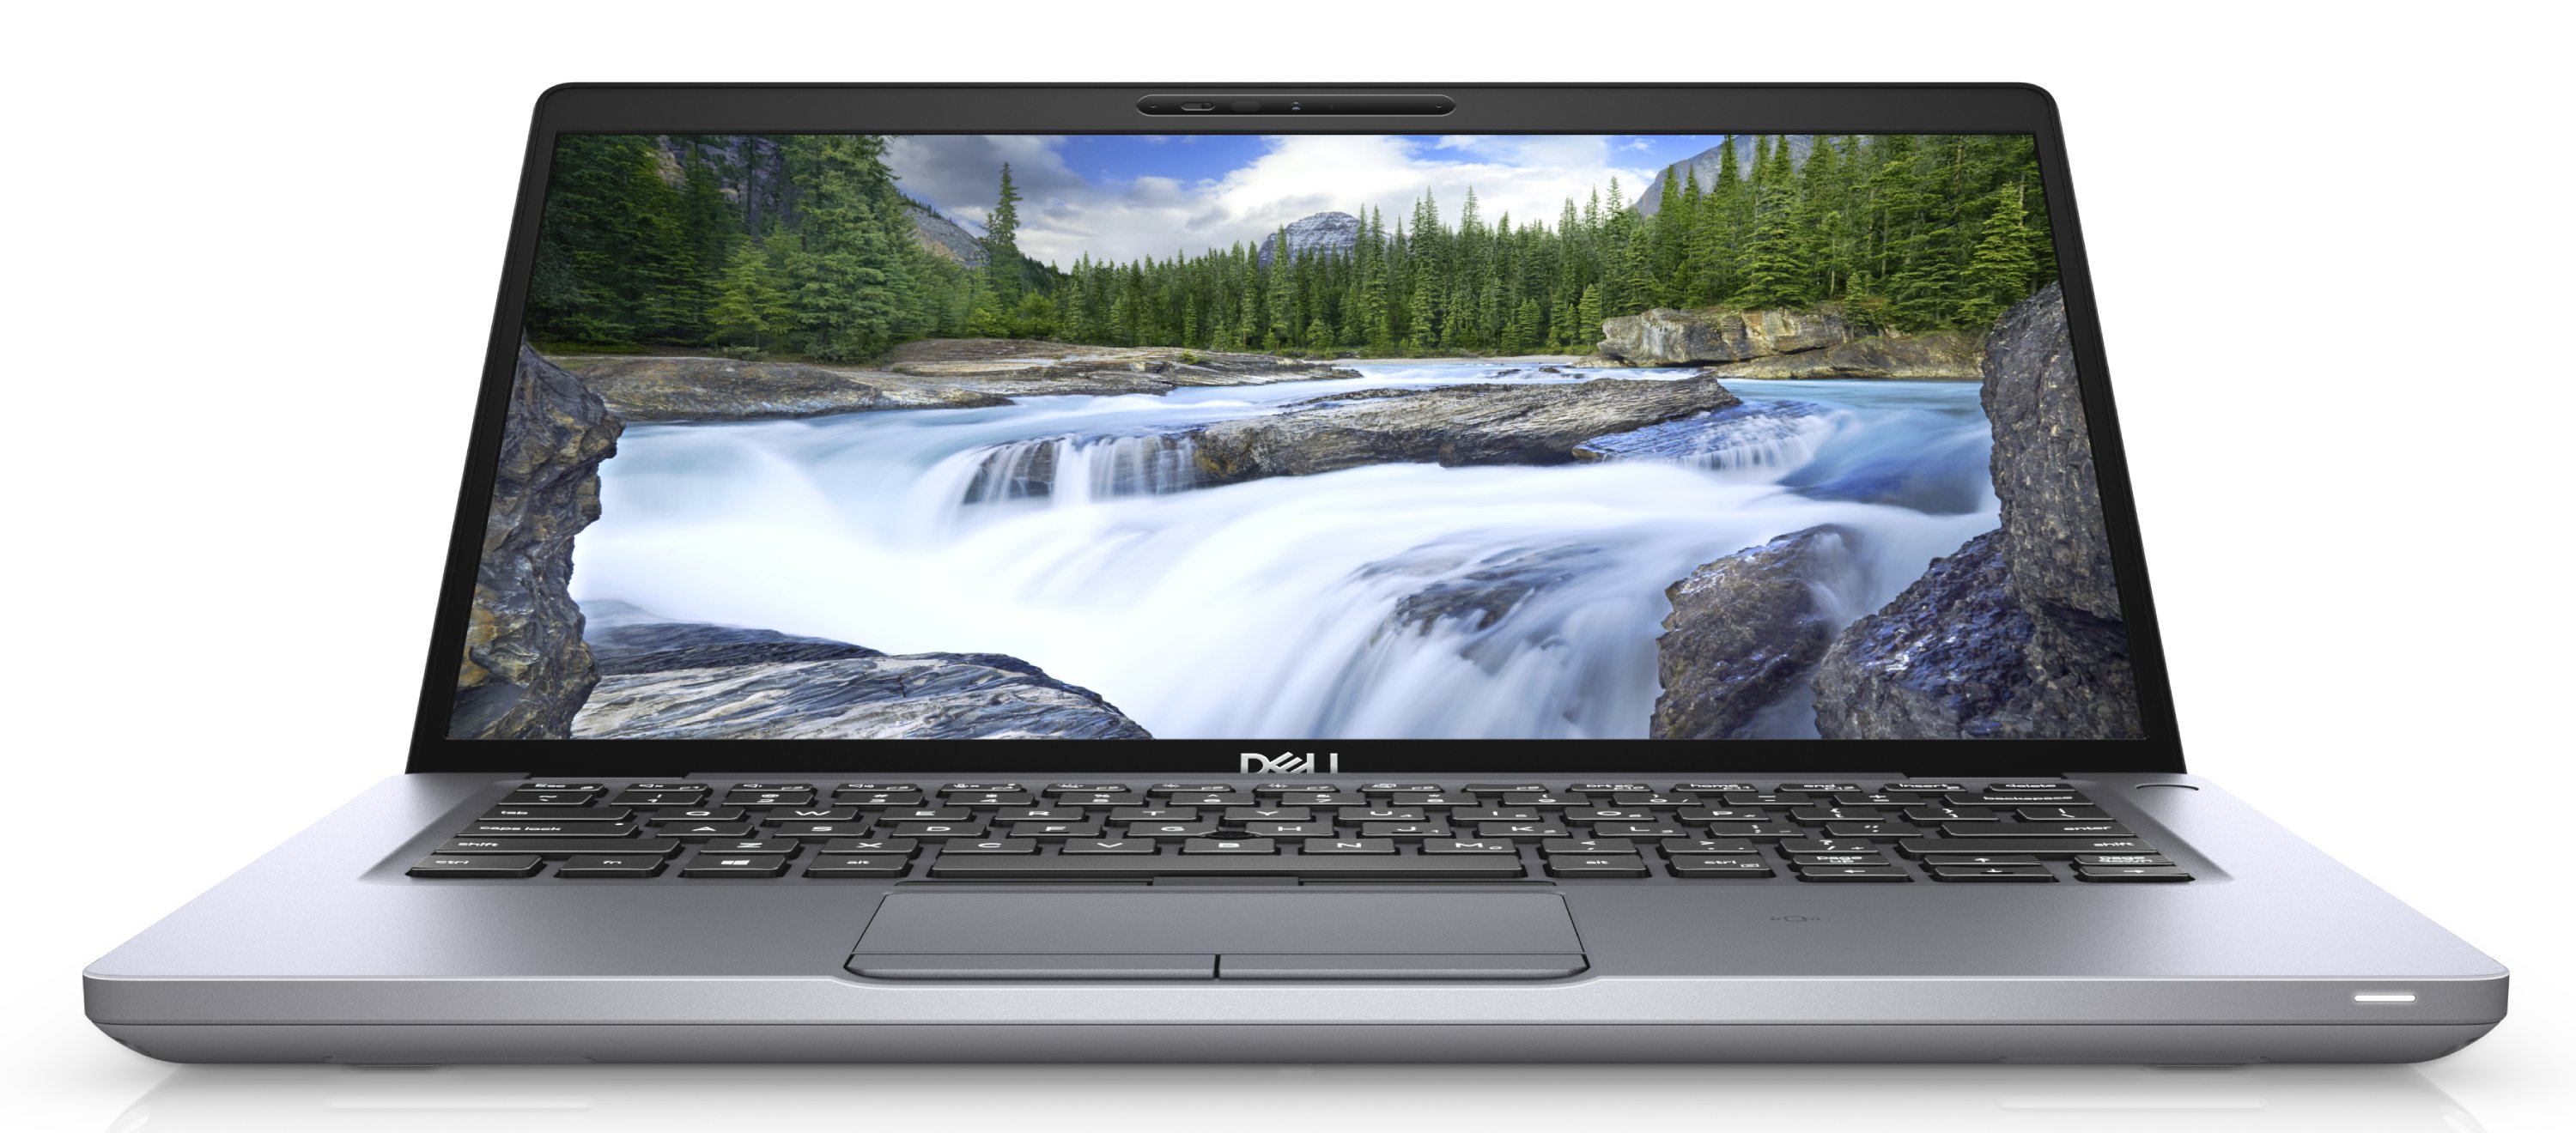 Ноутбук Dell Latitude 5410 Core i7-10610U (1,8GHz) 14,0" FullHD WVA Antiglare 300 nits 16GB (1x16GB) DDR4 512GB SSD Intel UHD 620 FPR,TPM,Thunderbolt 3,4 cell (68Whr) W10 Pro 3y NBD,gray-39136